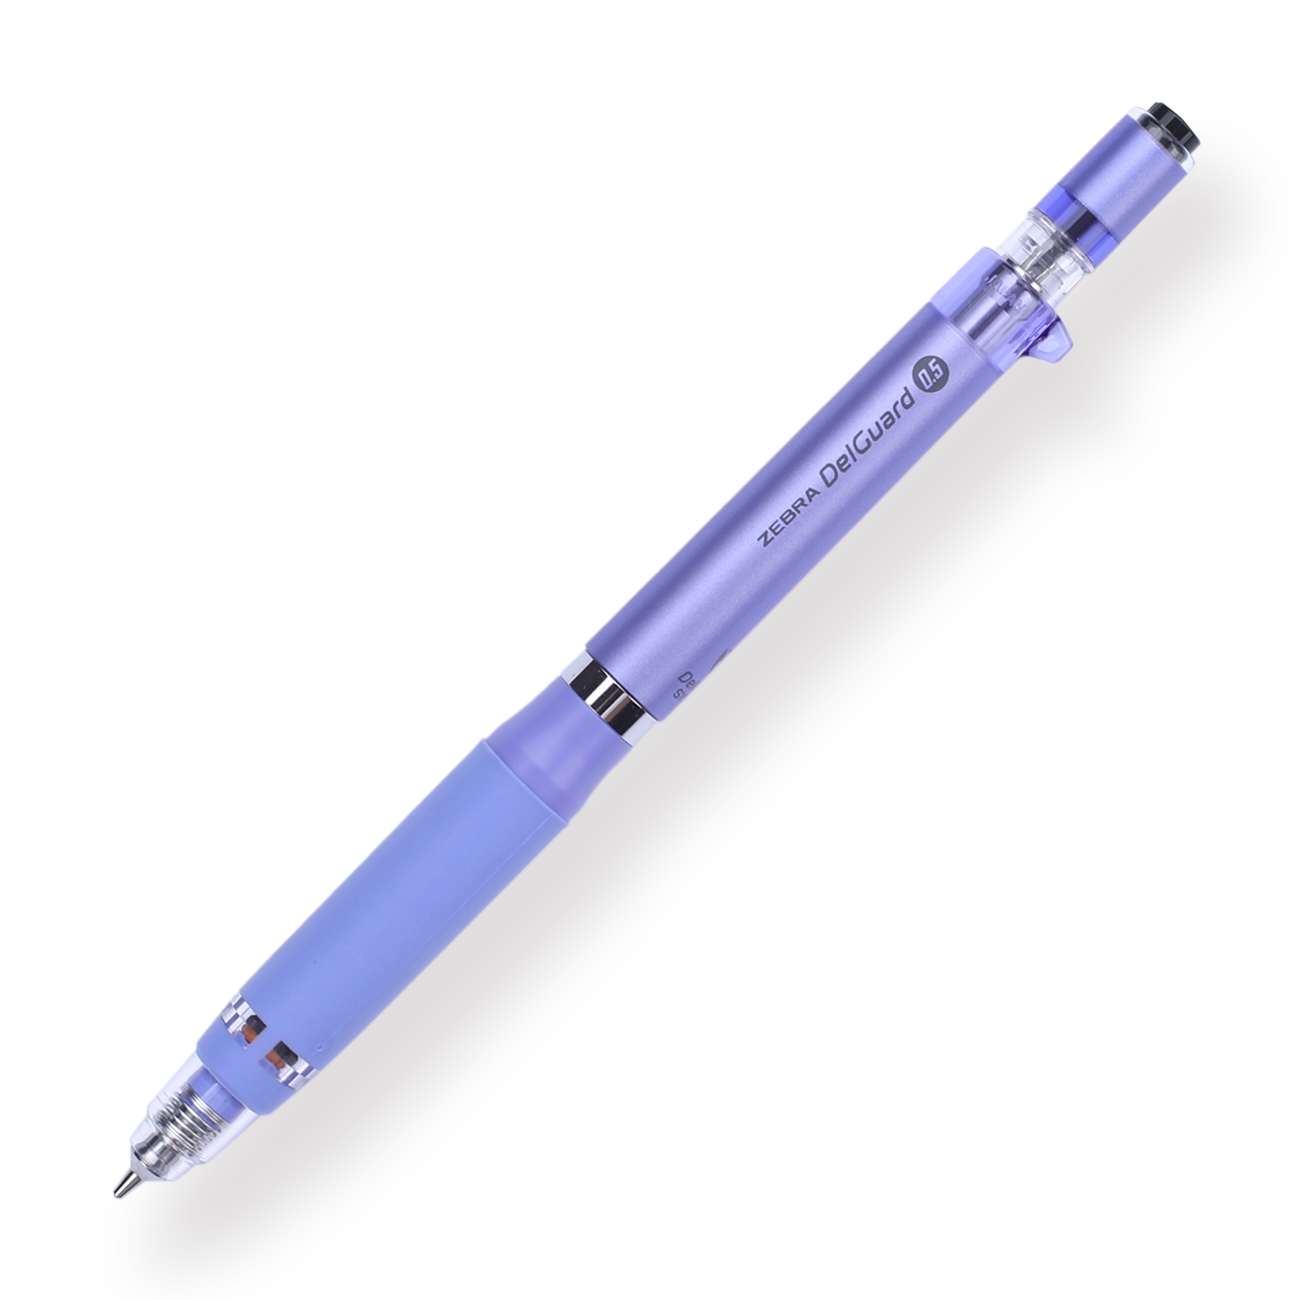 Zebra DelGuard Type ER Mechanical Pencil  - 0.5 mm - Violet